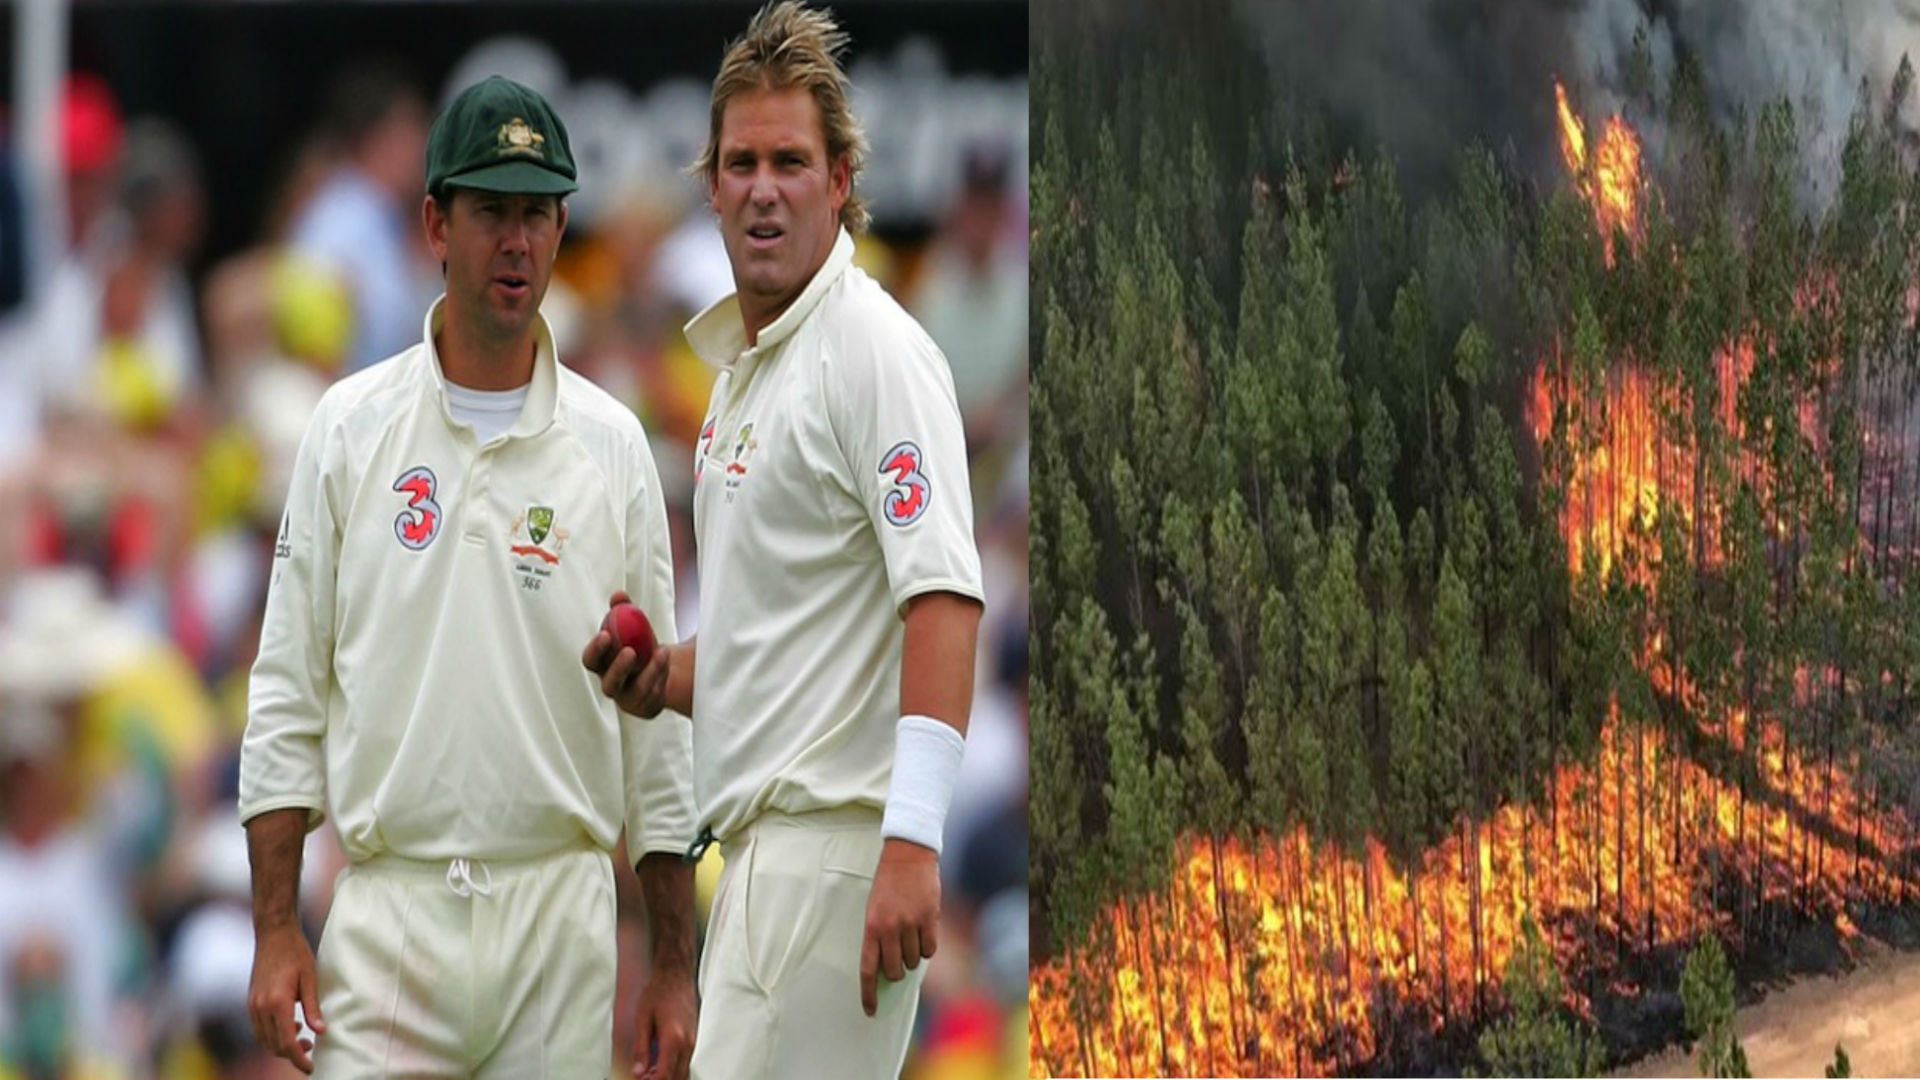 आस्ट्रेलियाई जंगलों में लगी आग पीडितों के चैरिटी के लिए टी 20 मैच